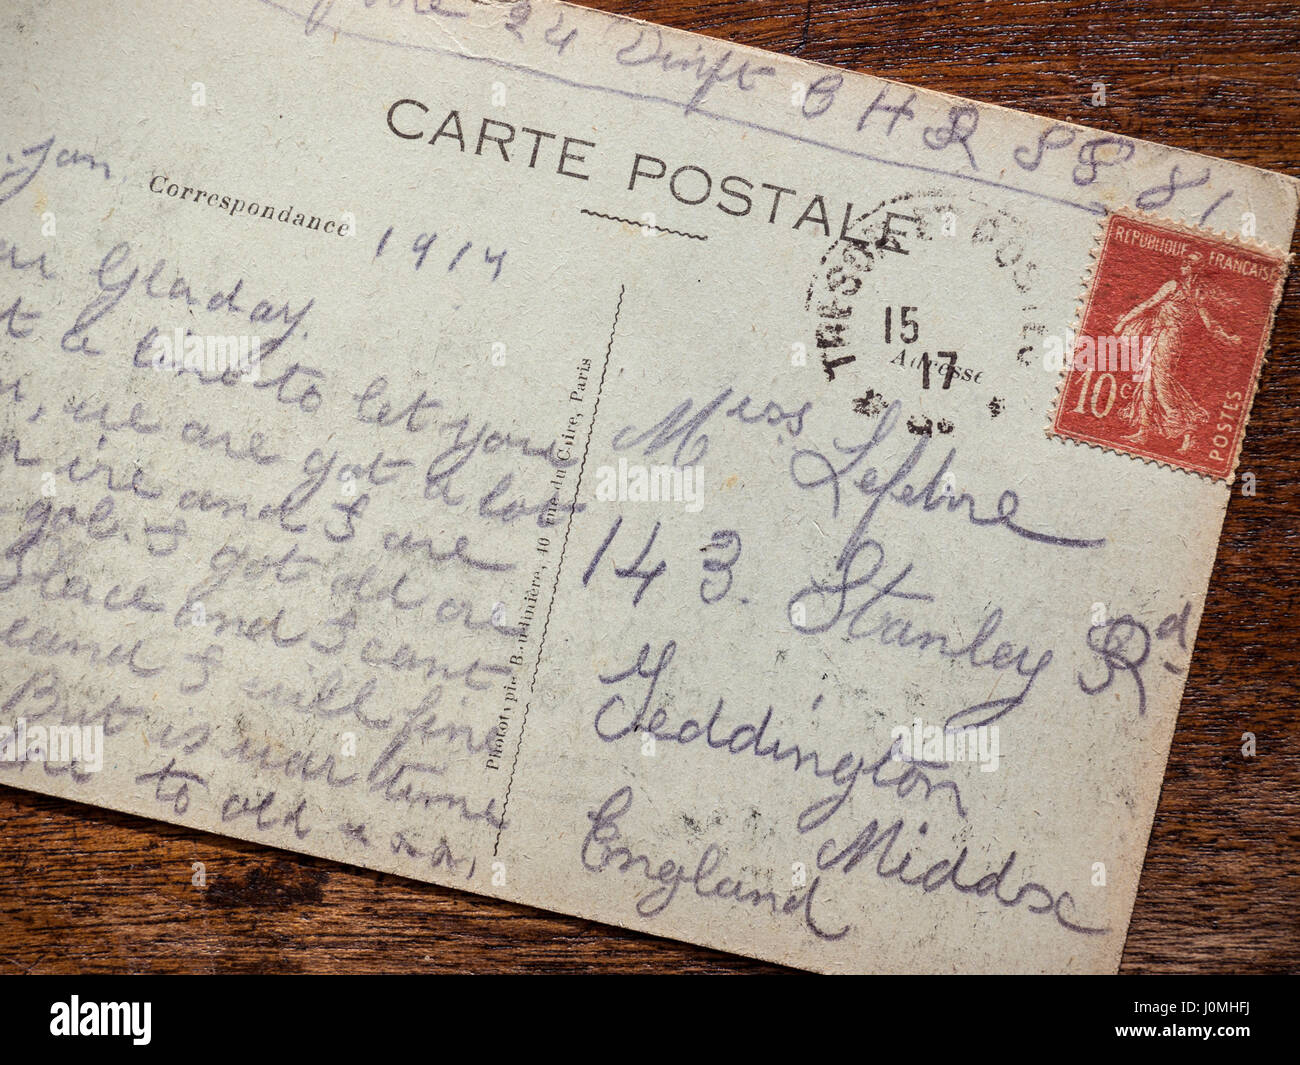 Historique poignant vintage WW1 1917 carte postale, envoyée à partir de la bataille de Verdun en France, par un soldat britannique en laissant sa petite amie qu'il est bien Première Guerre mondiale Guerre mondiale 1 Banque D'Images